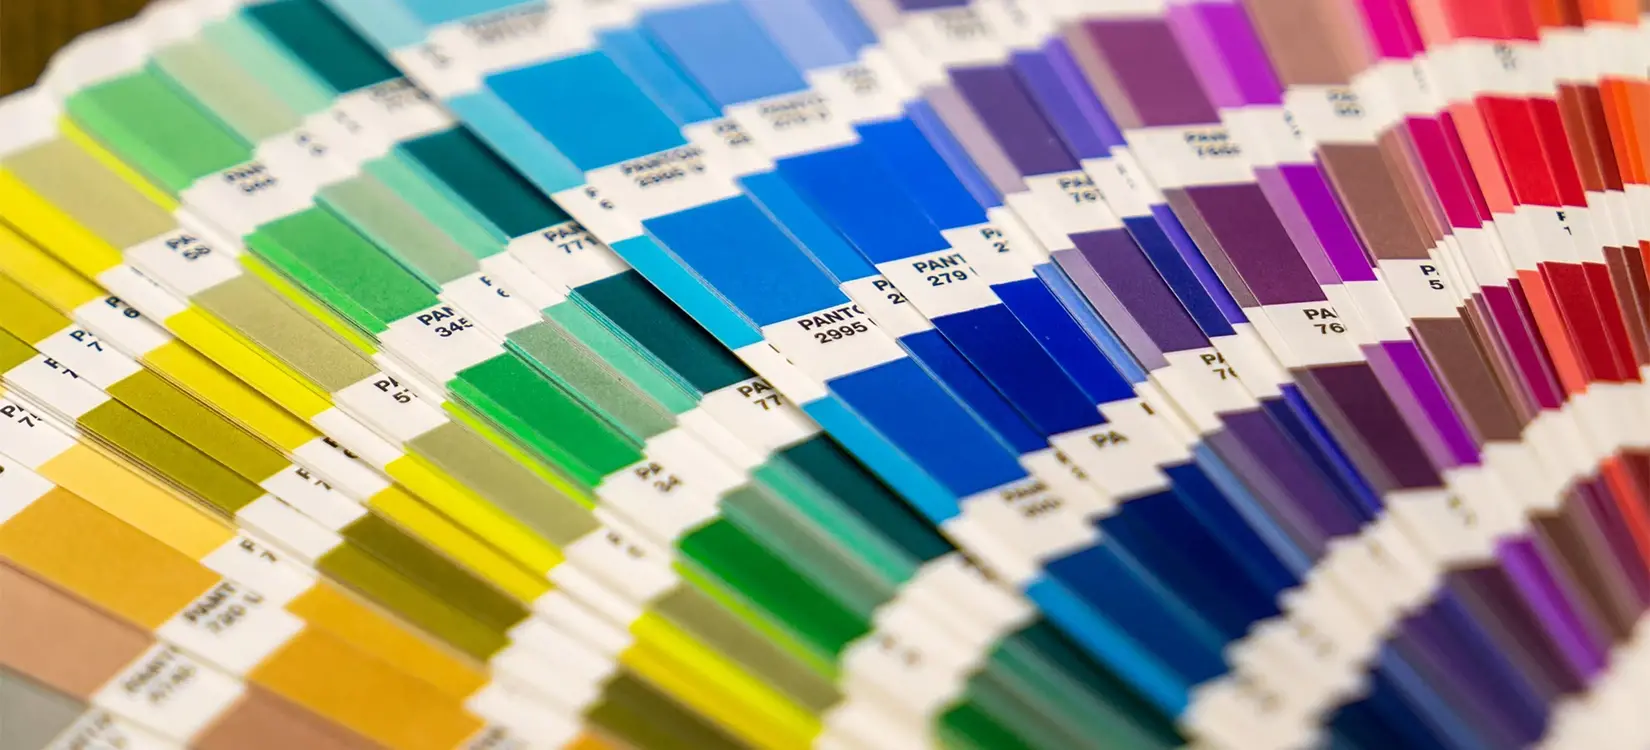 Erfahren Sie jetzt mehr über die Farbsysteme RGB, CMYK sowie Pantone und lernen Sie, wie Sie mithilfe der richtigen Farbe das Ihre Designs optimieren!